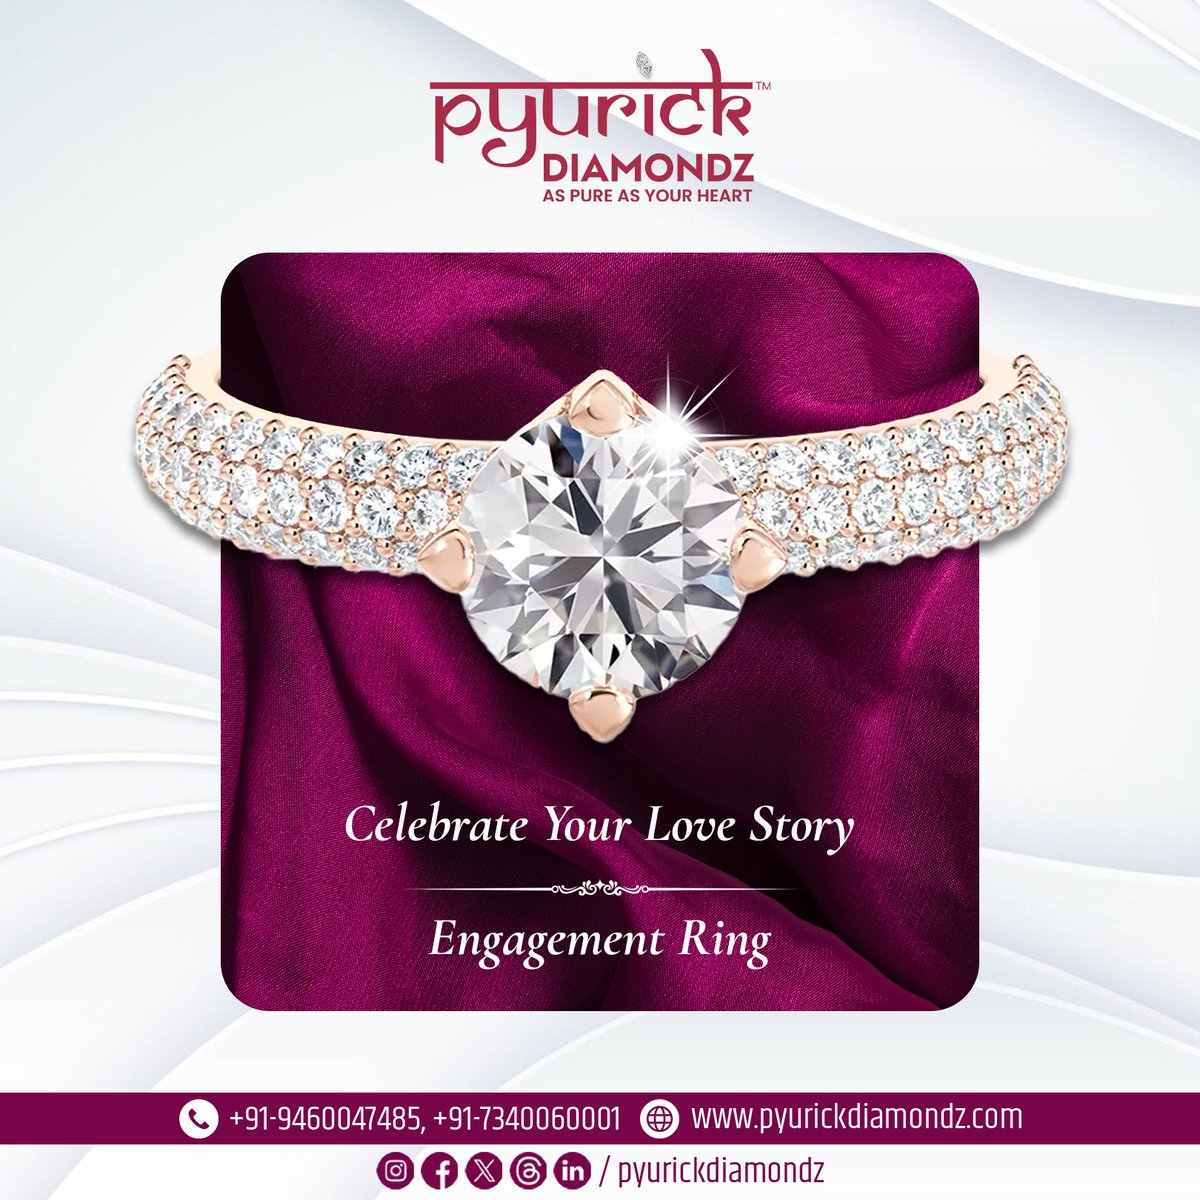 Celebrate your Love Story with Engagement Ring✨💎
.
#engagementring #ElegantGems #LuxuryJewelry #ShineBright #udaipur #diamonds #finejewelry #pyurickdiamondz #trending #explore